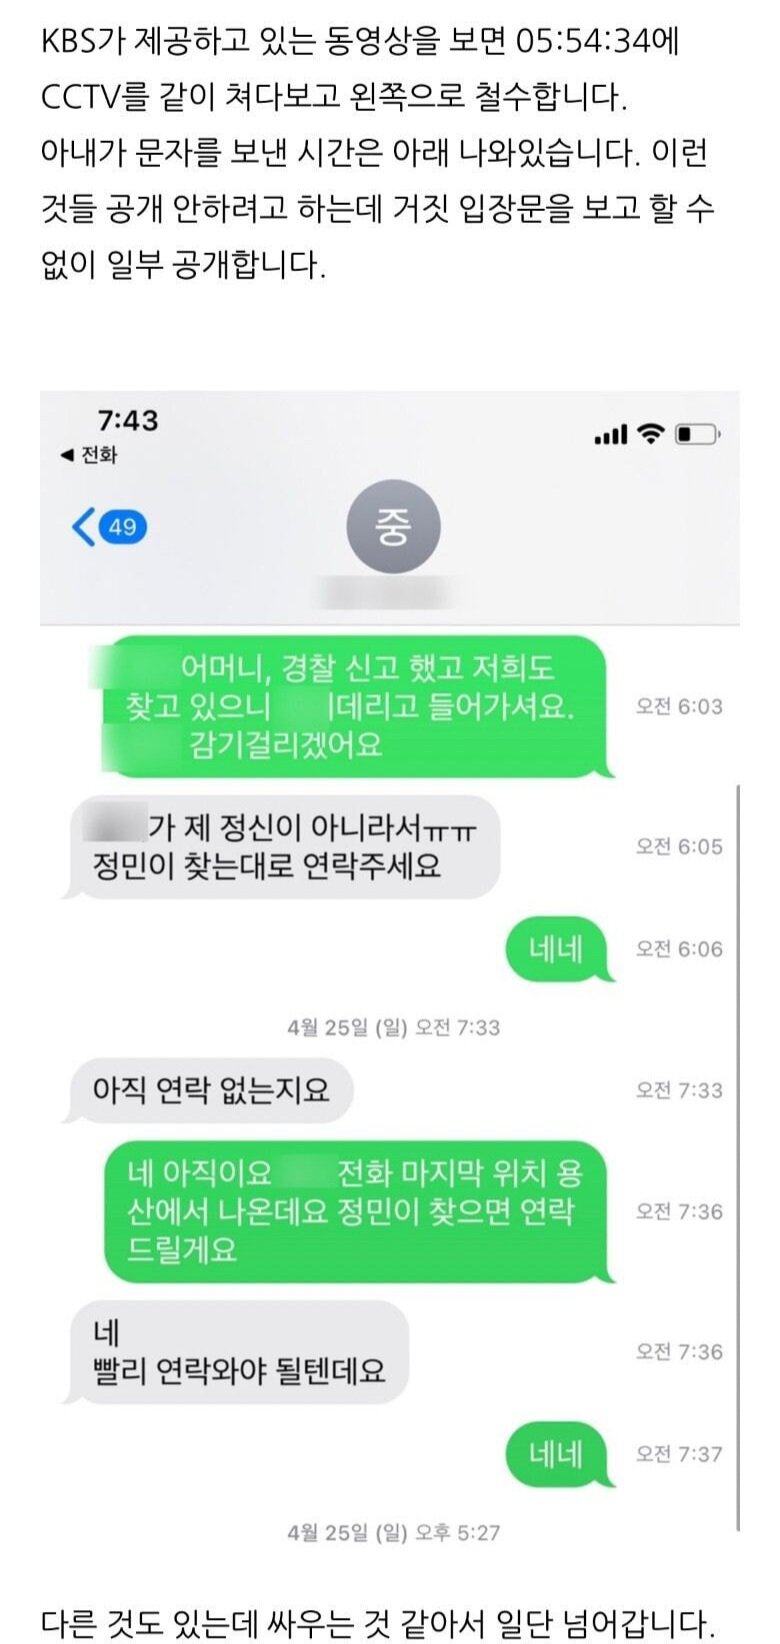 한강사망대학생 아빠의 문자내용 공개